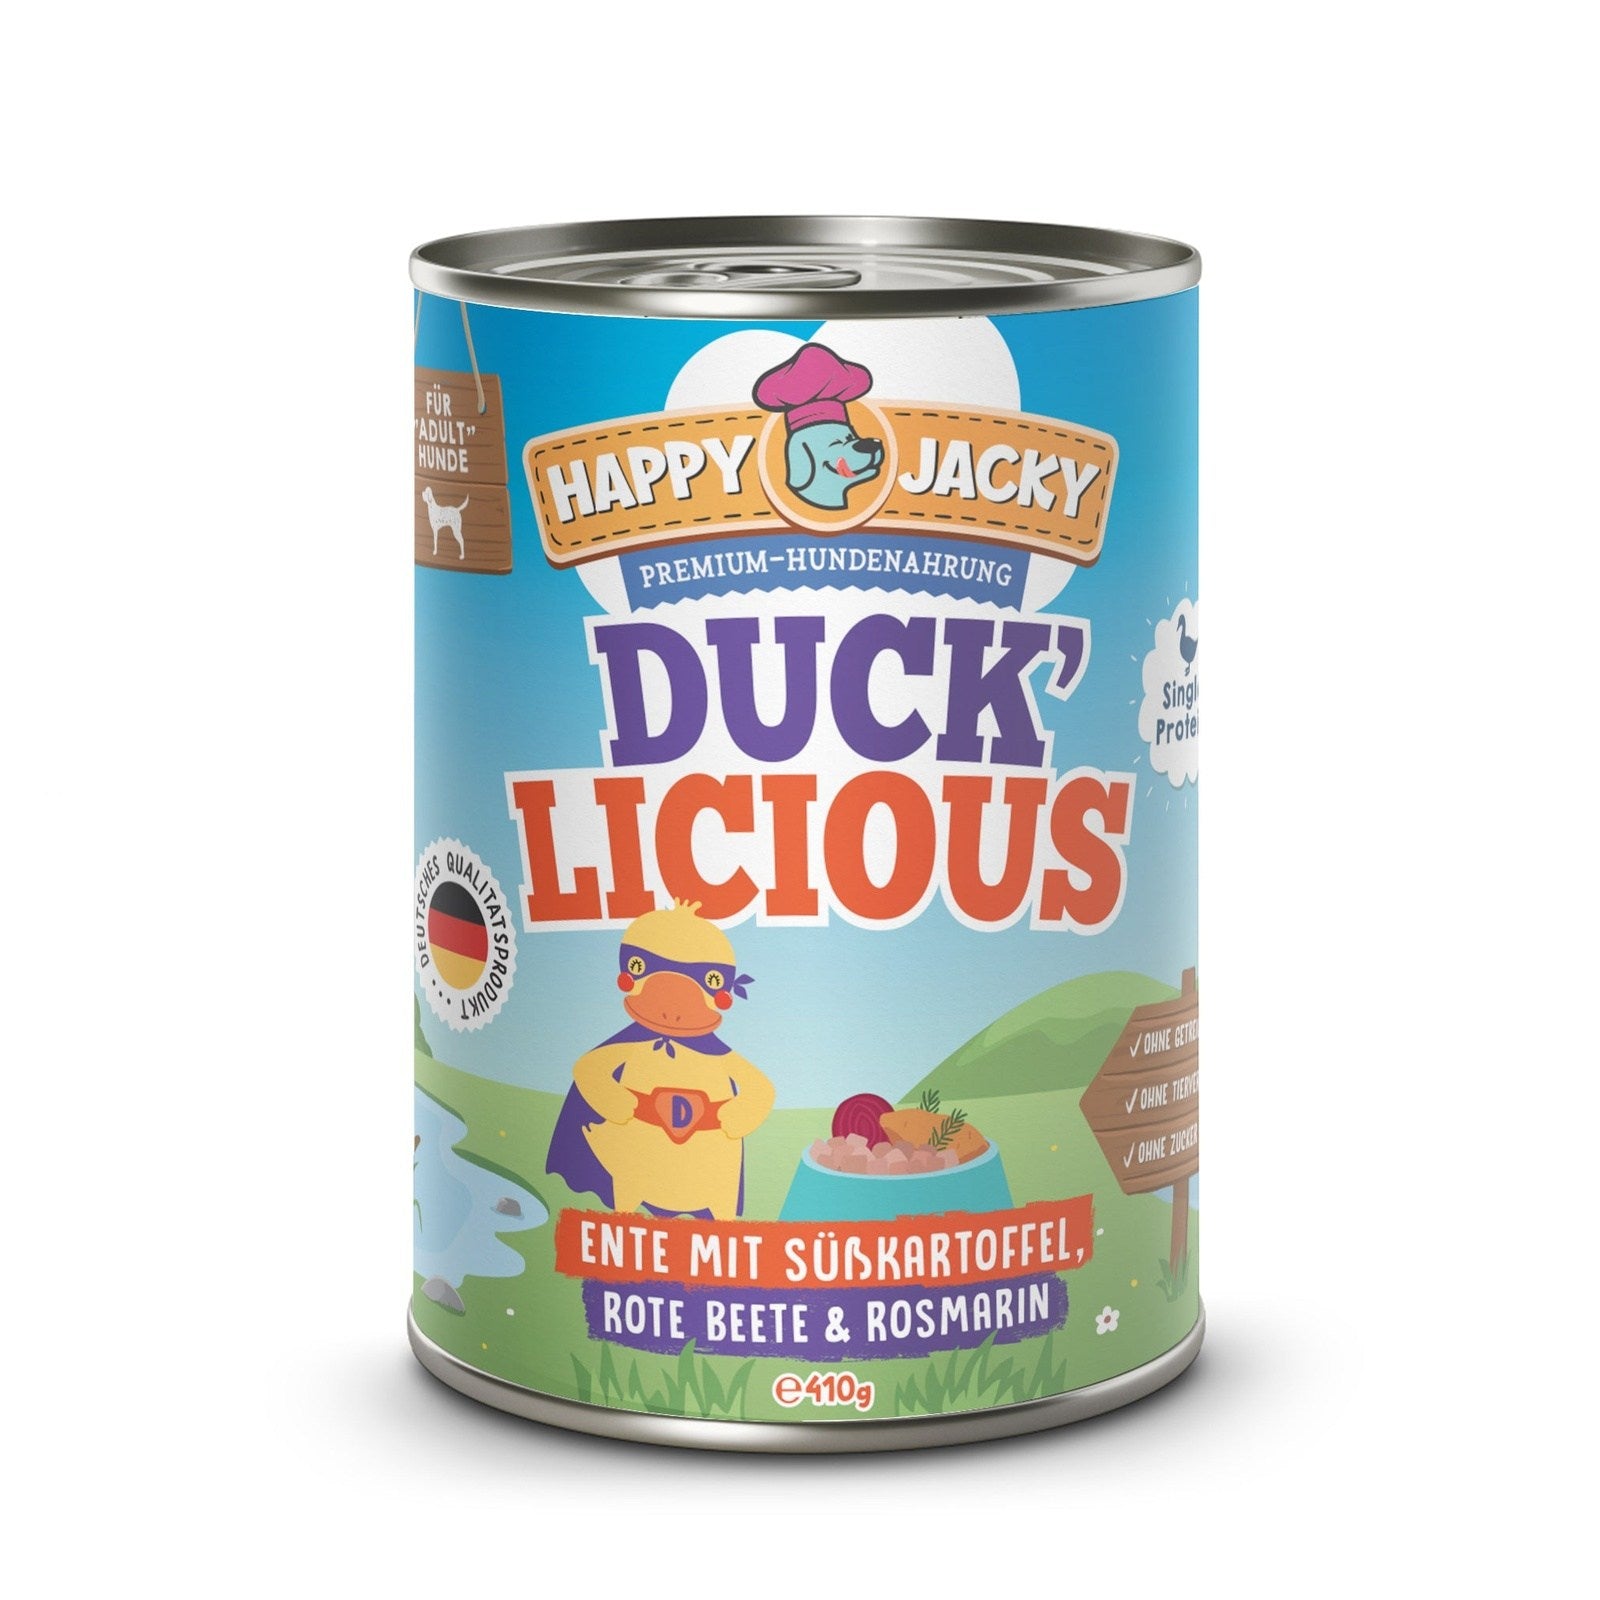 Ducklicious - Ente mit Süßkartoffel, Rote Beete & Rosmarin HAPPY JACKY